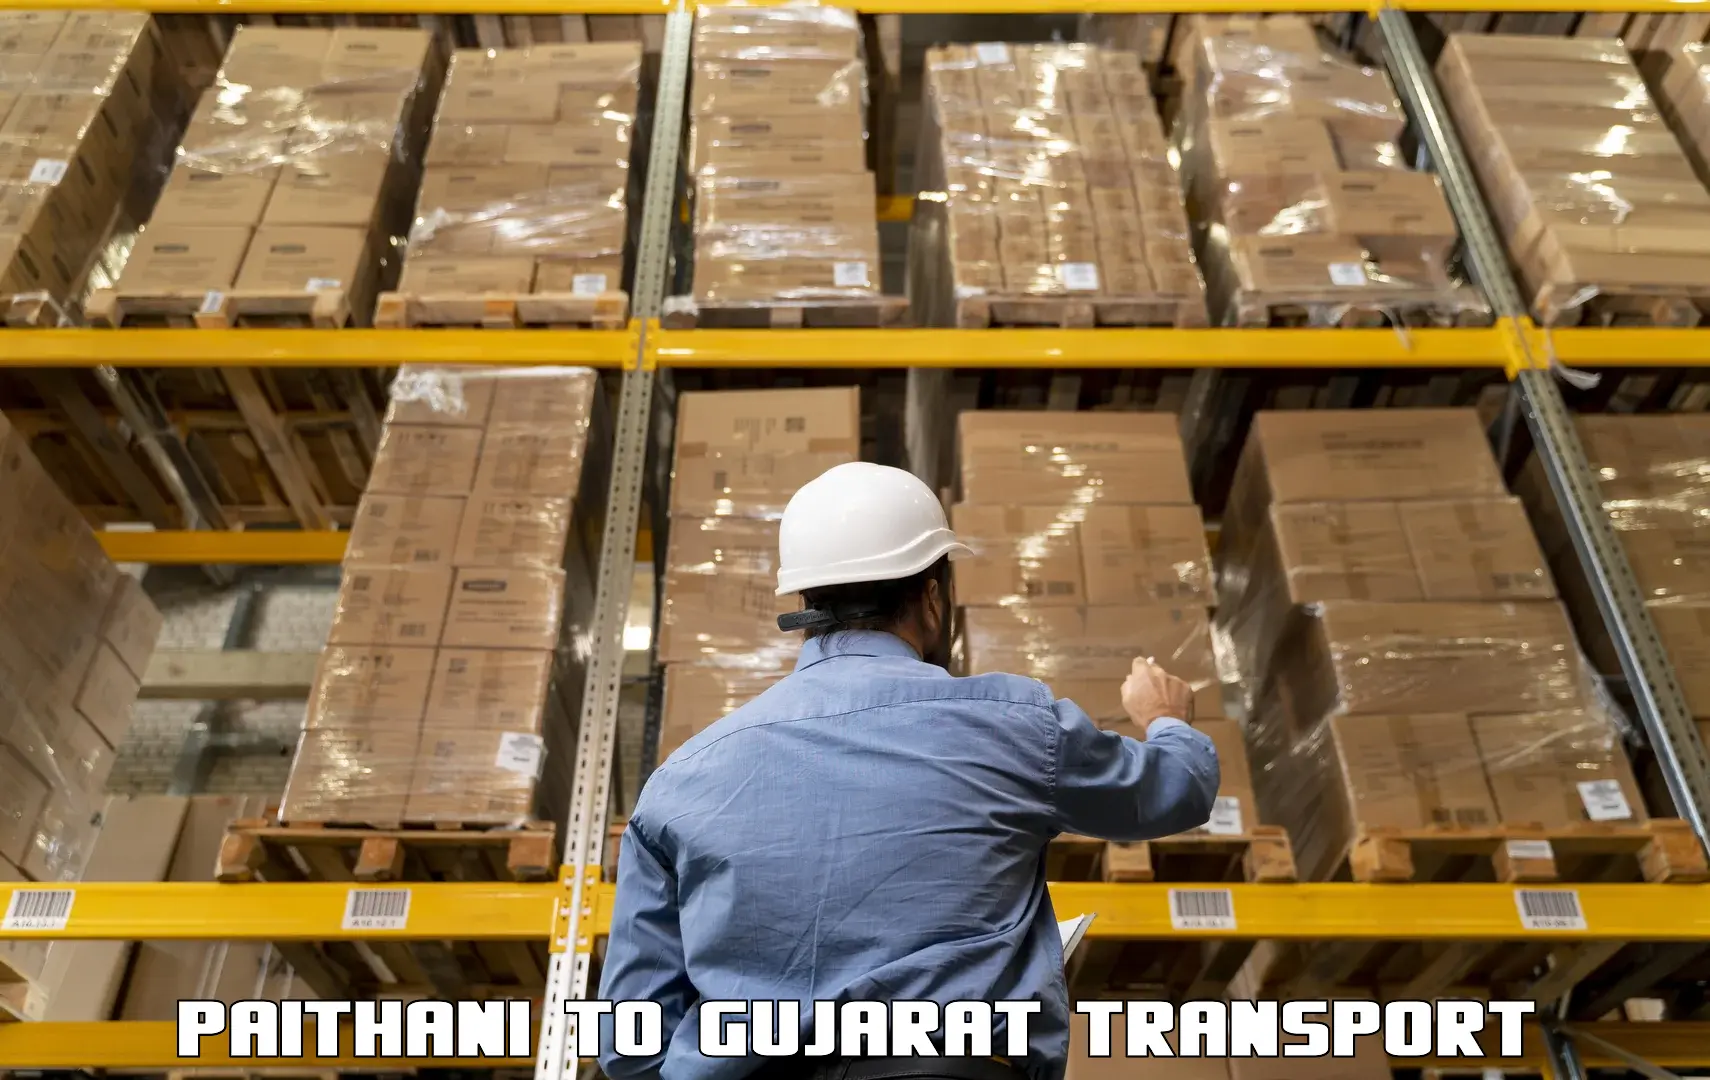 Luggage transport services Paithani to Umreth